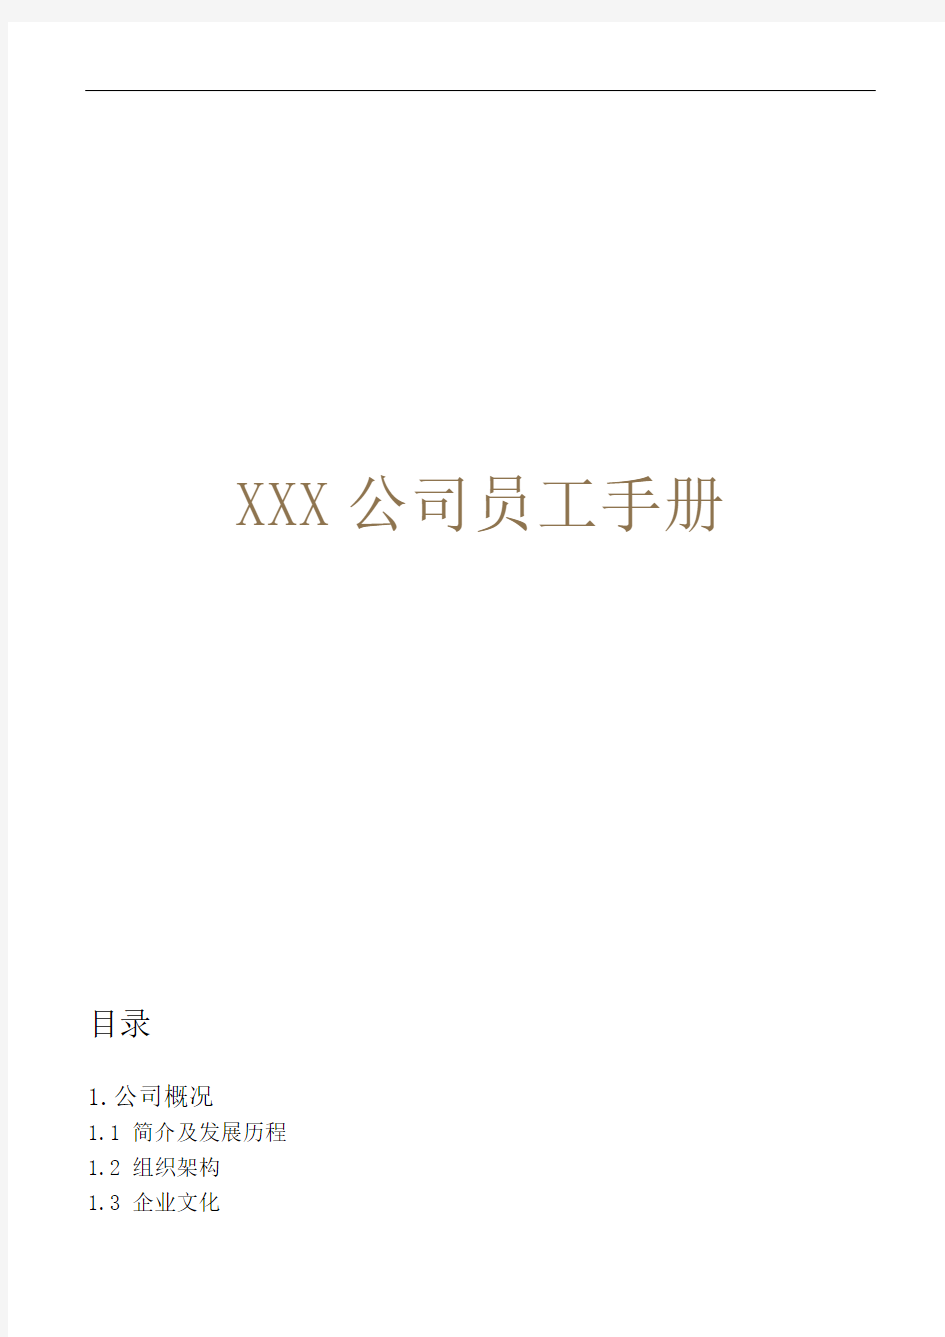 XX公司员工手册(内容详细_实际案例)